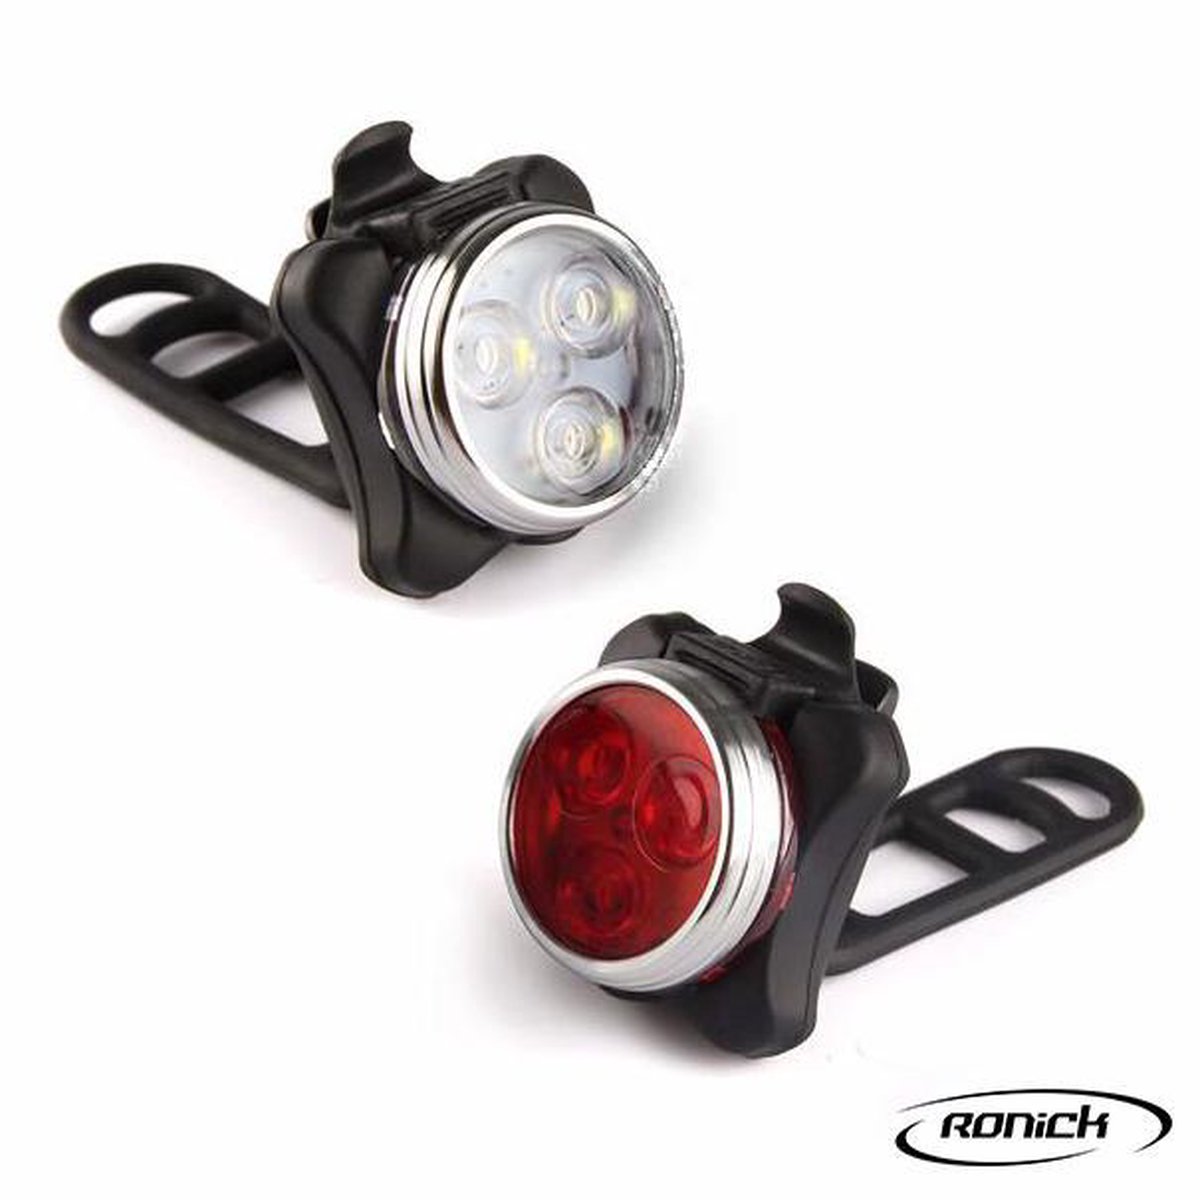 Ronick LED Fietsverlichtingset - USB Oplaadbaar Fietslampjes set Wit en Rood – Fietslamp Voorlicht en Achterlicht - Ronick